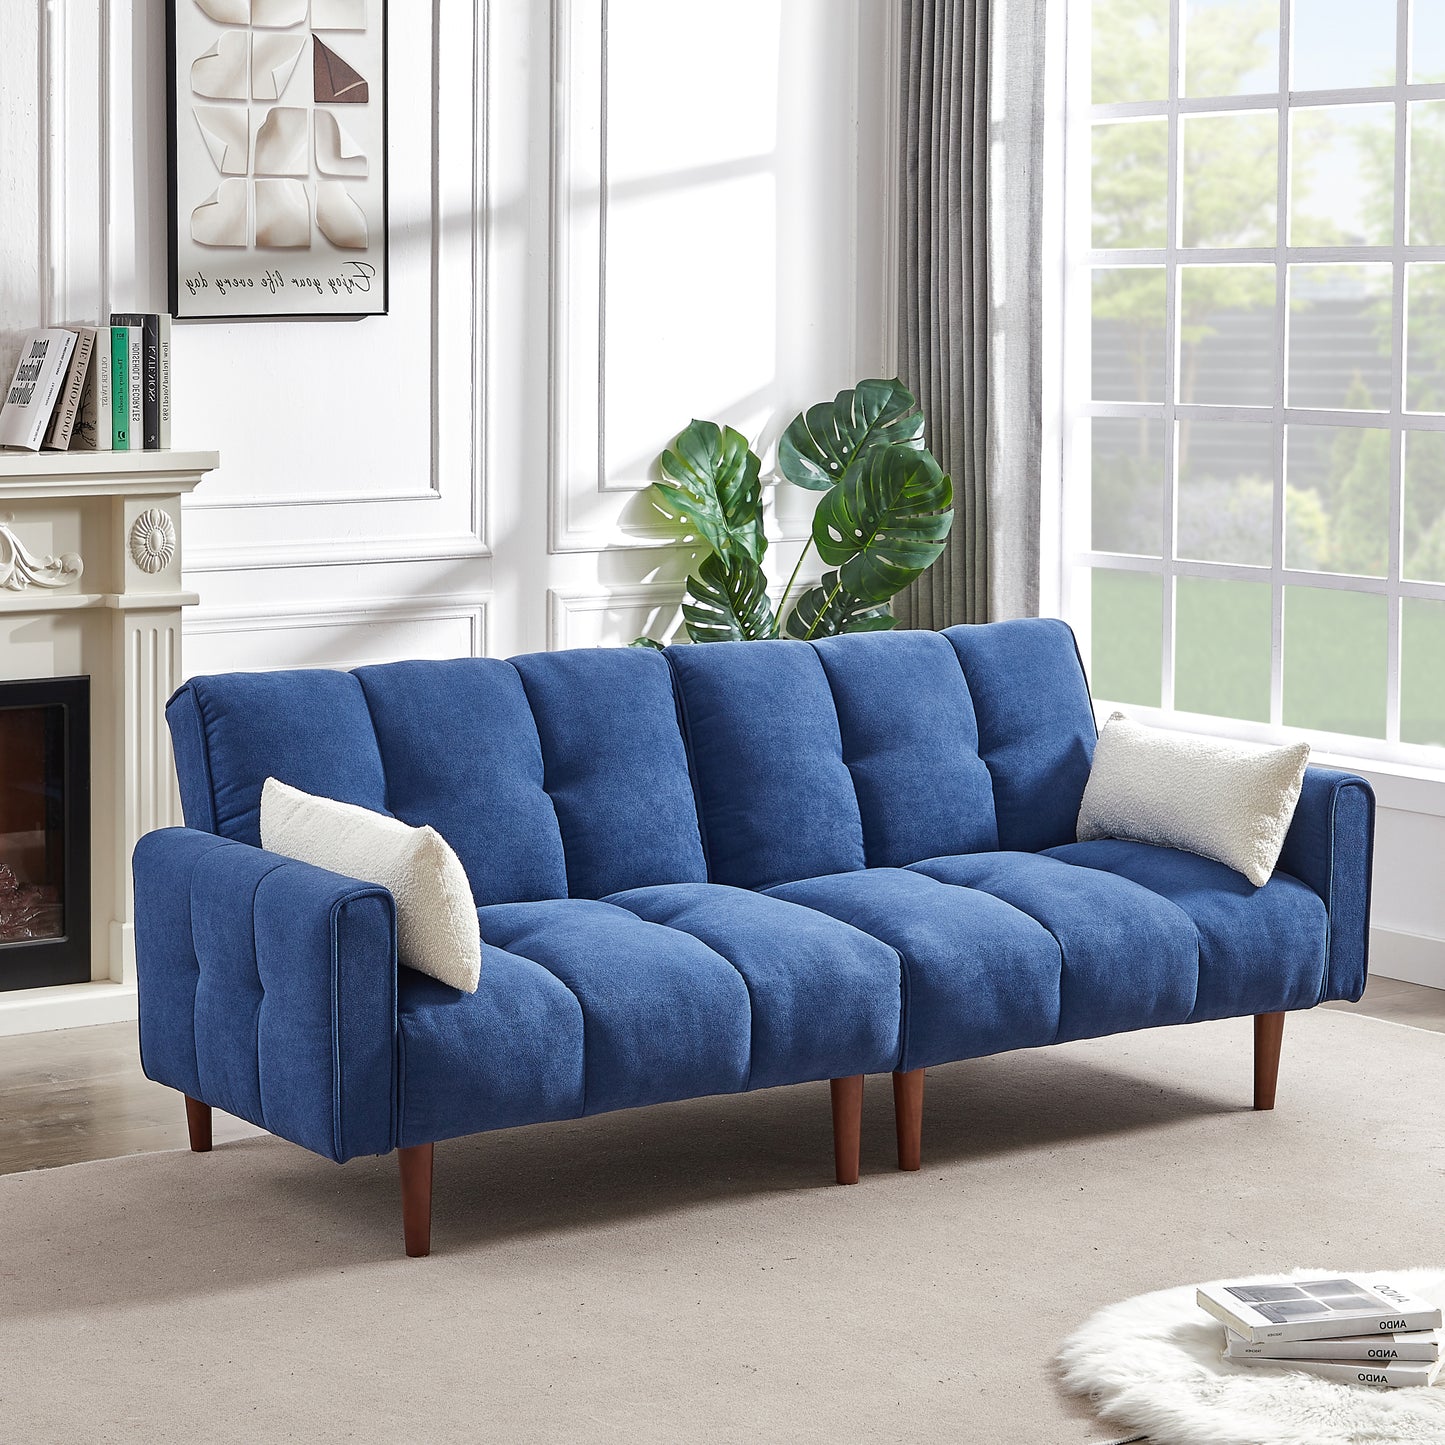 Convertible Futon Sofa Bed, 2 Pillows, Blue